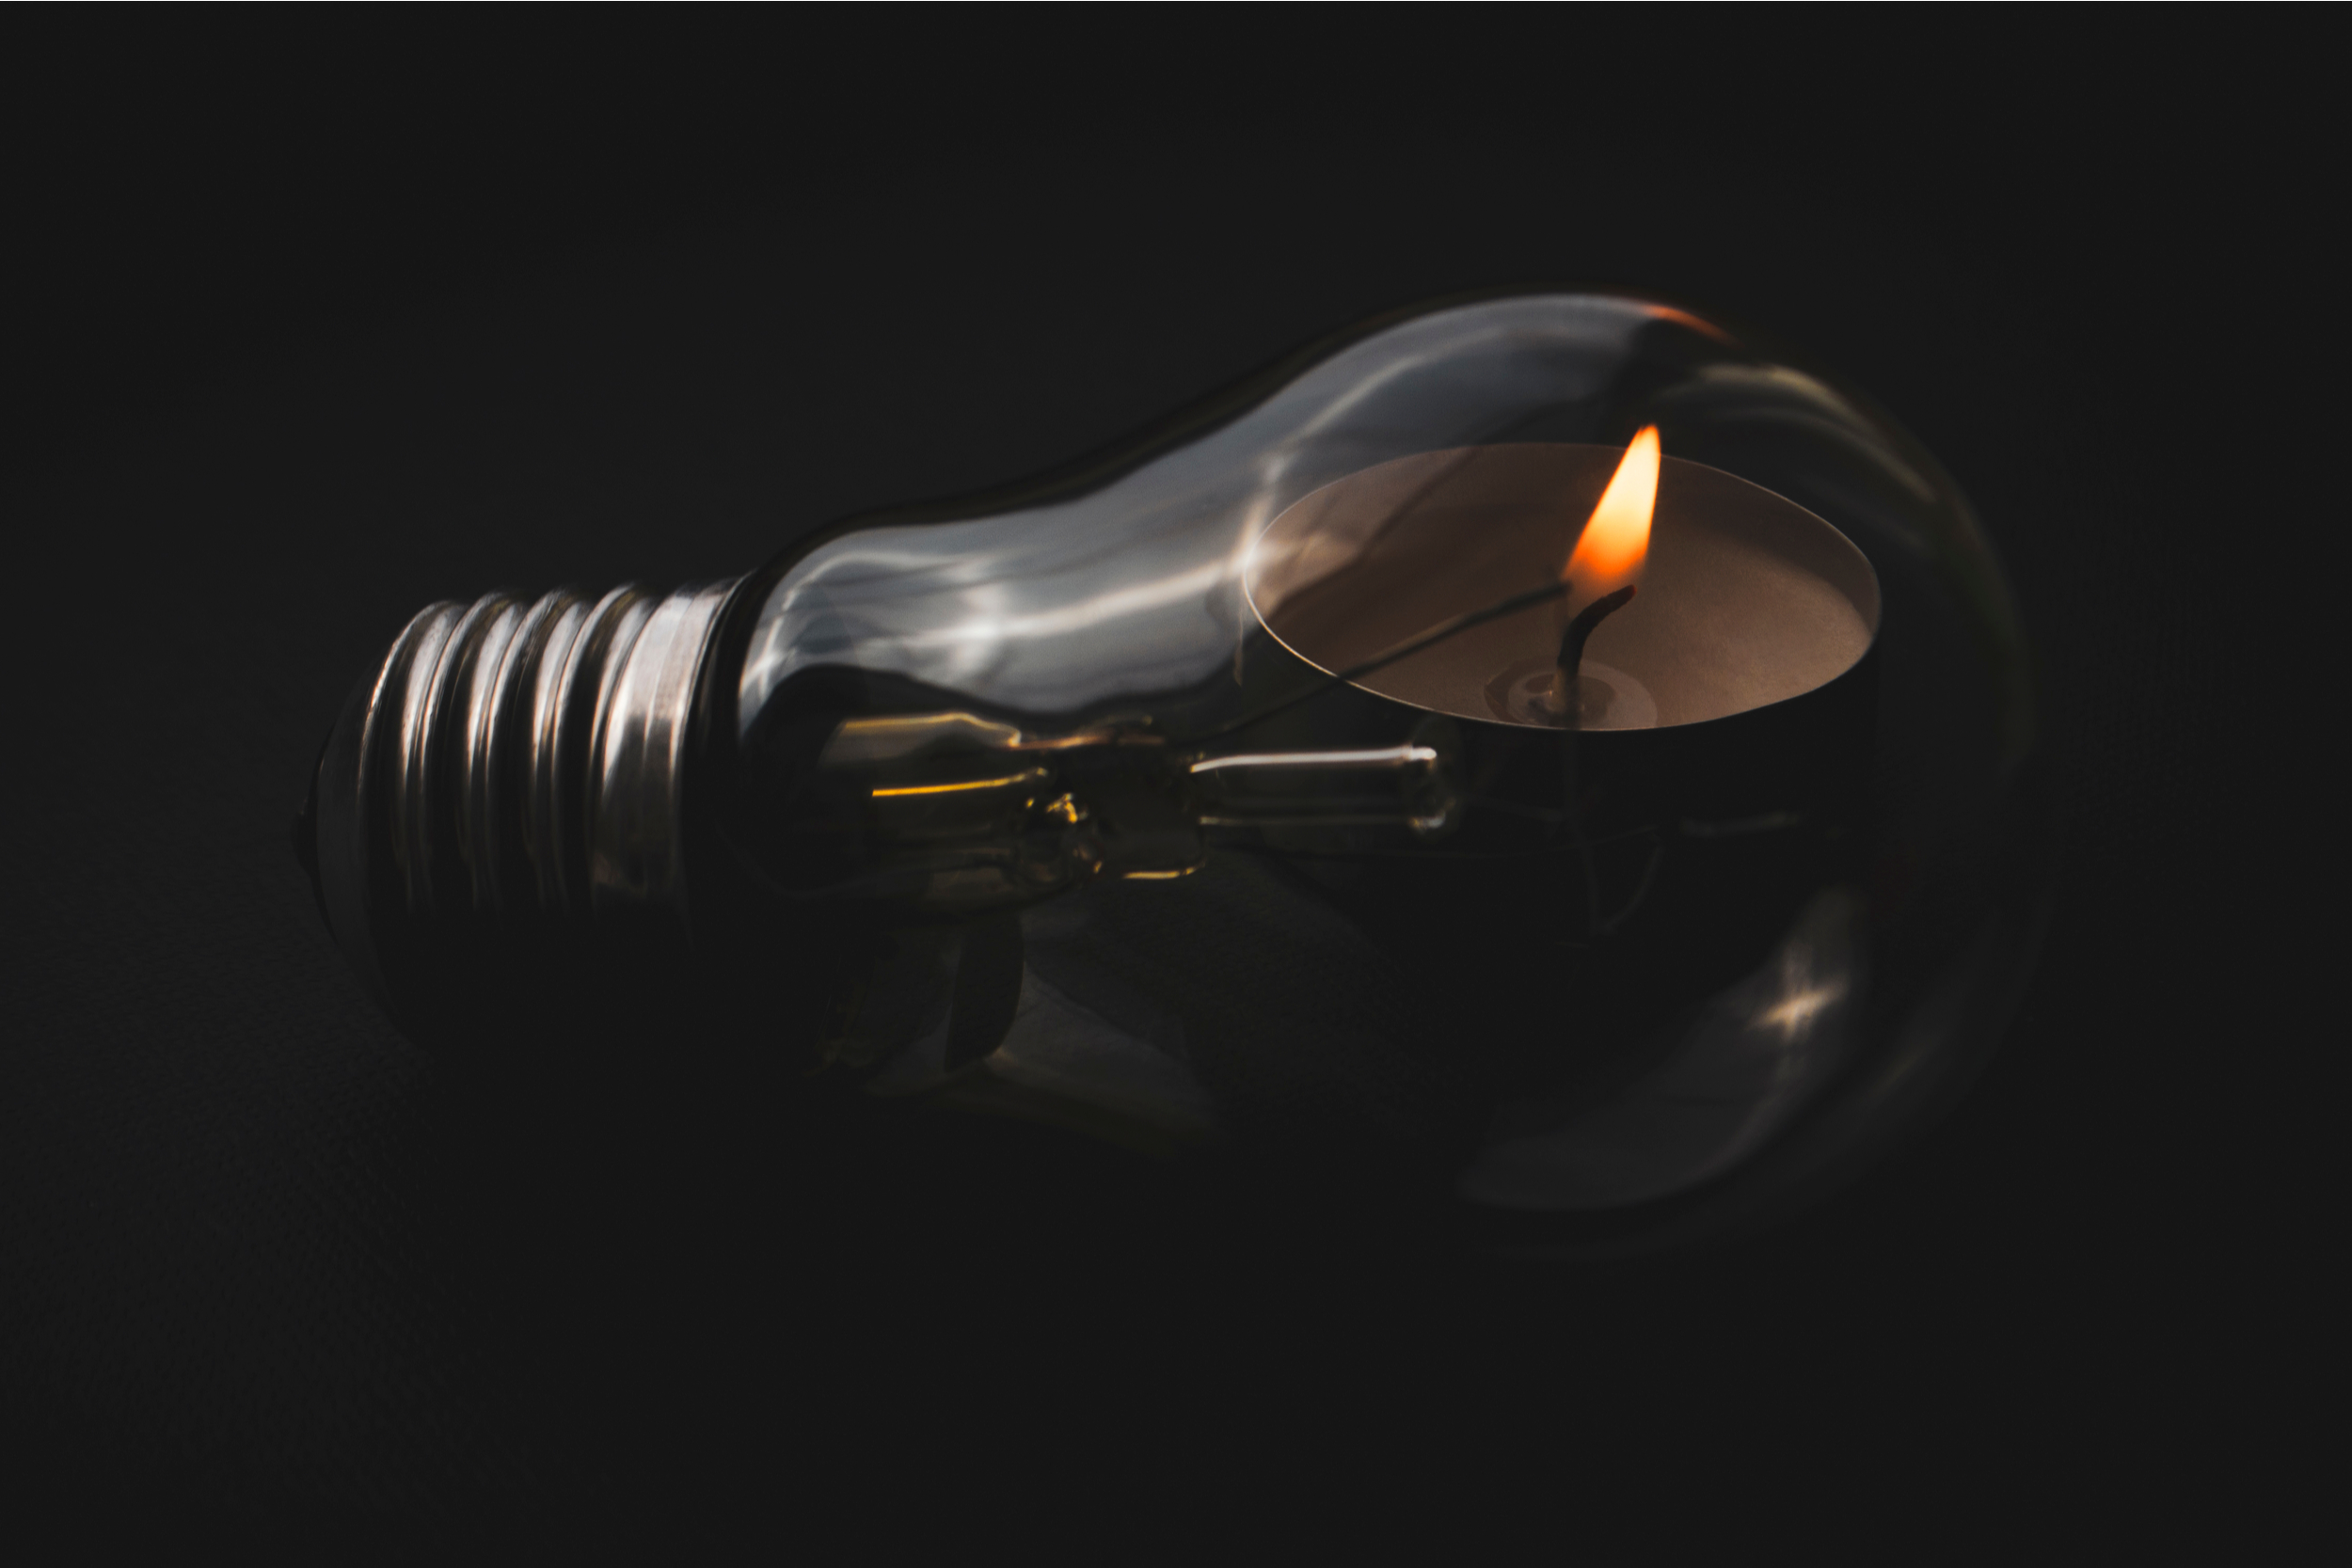 blackout, niedobór energii elektrycznej, brak prądufot. Shutterstock